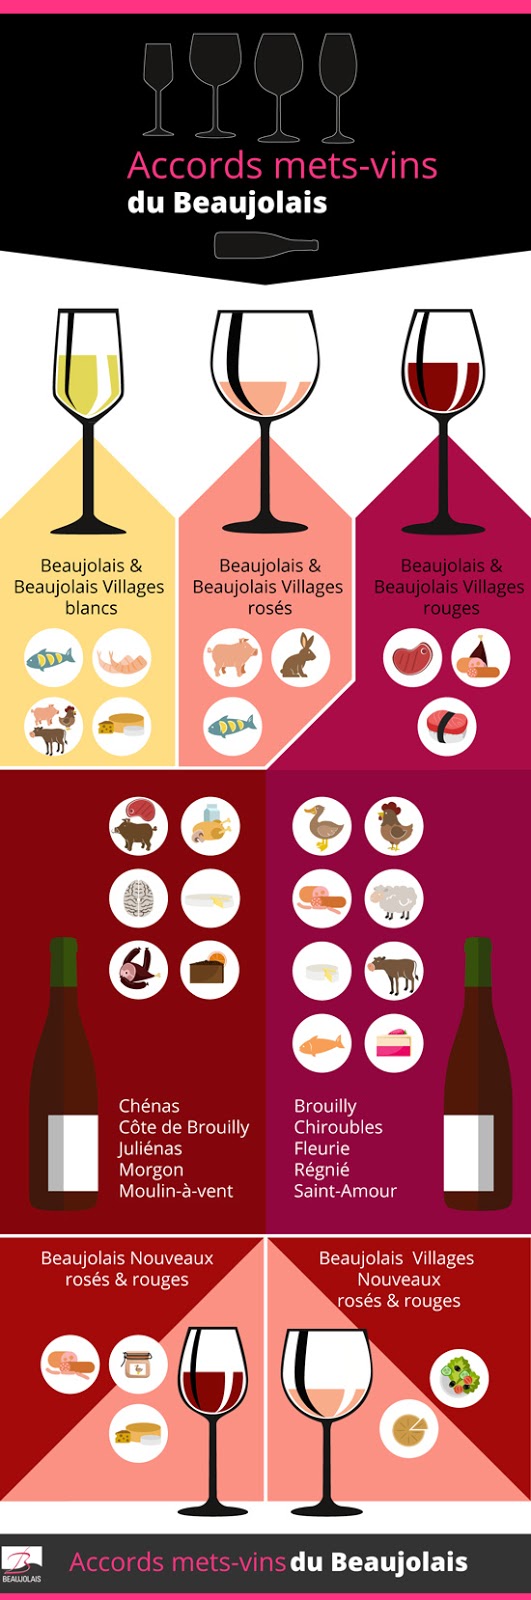 Le Beaujolais - rodzaje win - Francuski przy kawie